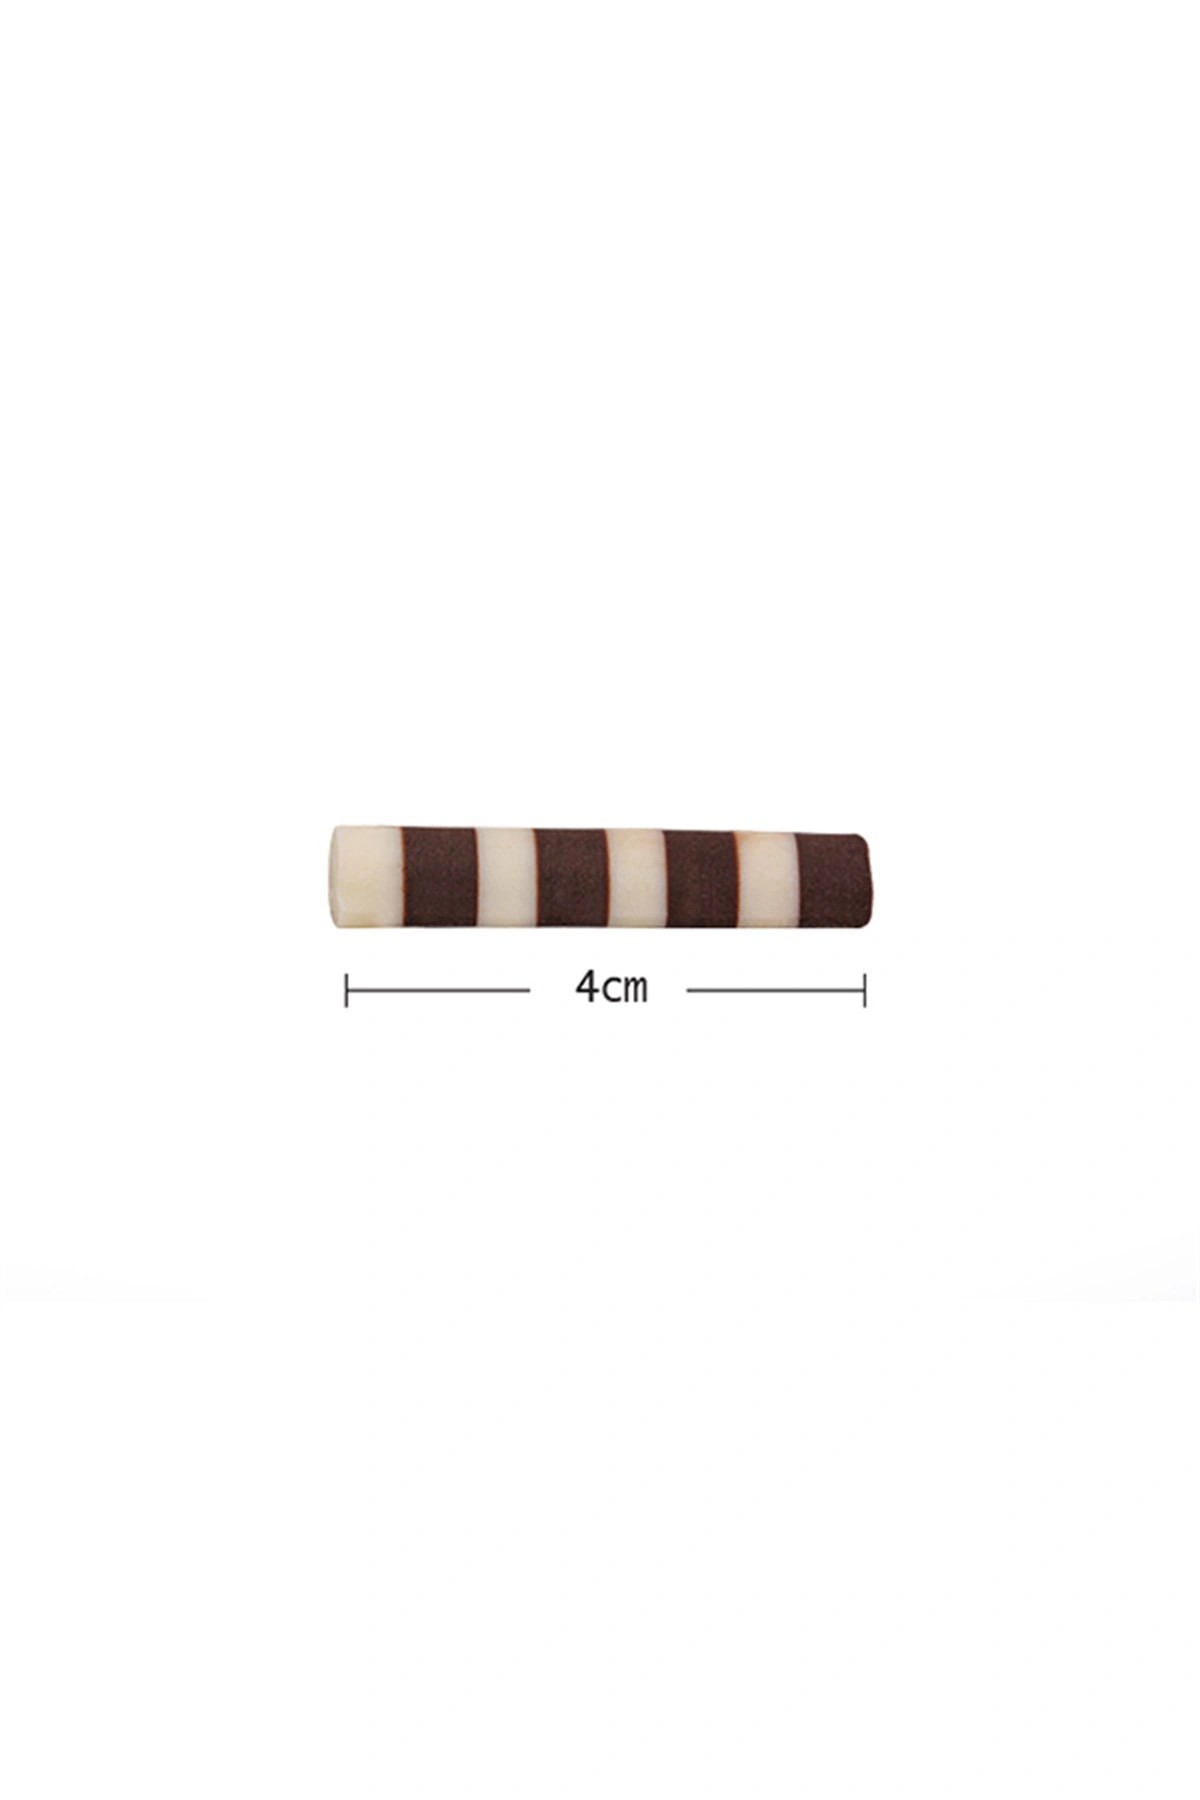 Mini Rulo Çikolata 100 gr